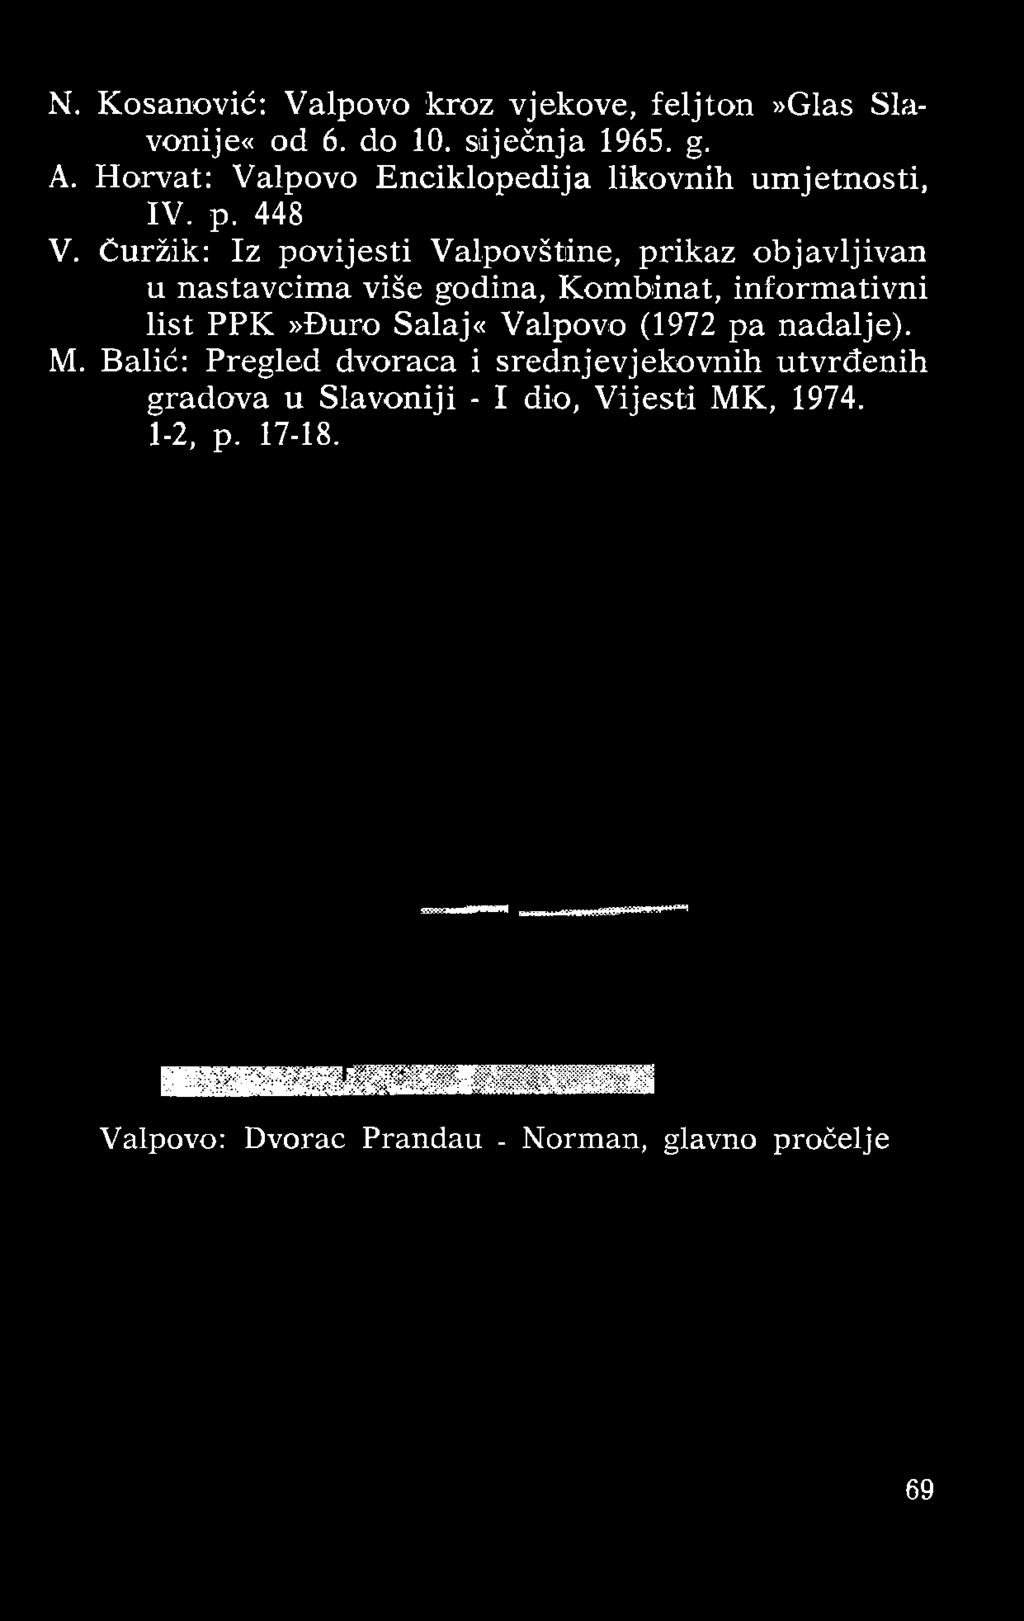 Kom binat, inform ativni list P P K»Đ uro S alaj«v alpovo (1972 pa nadalje). M.